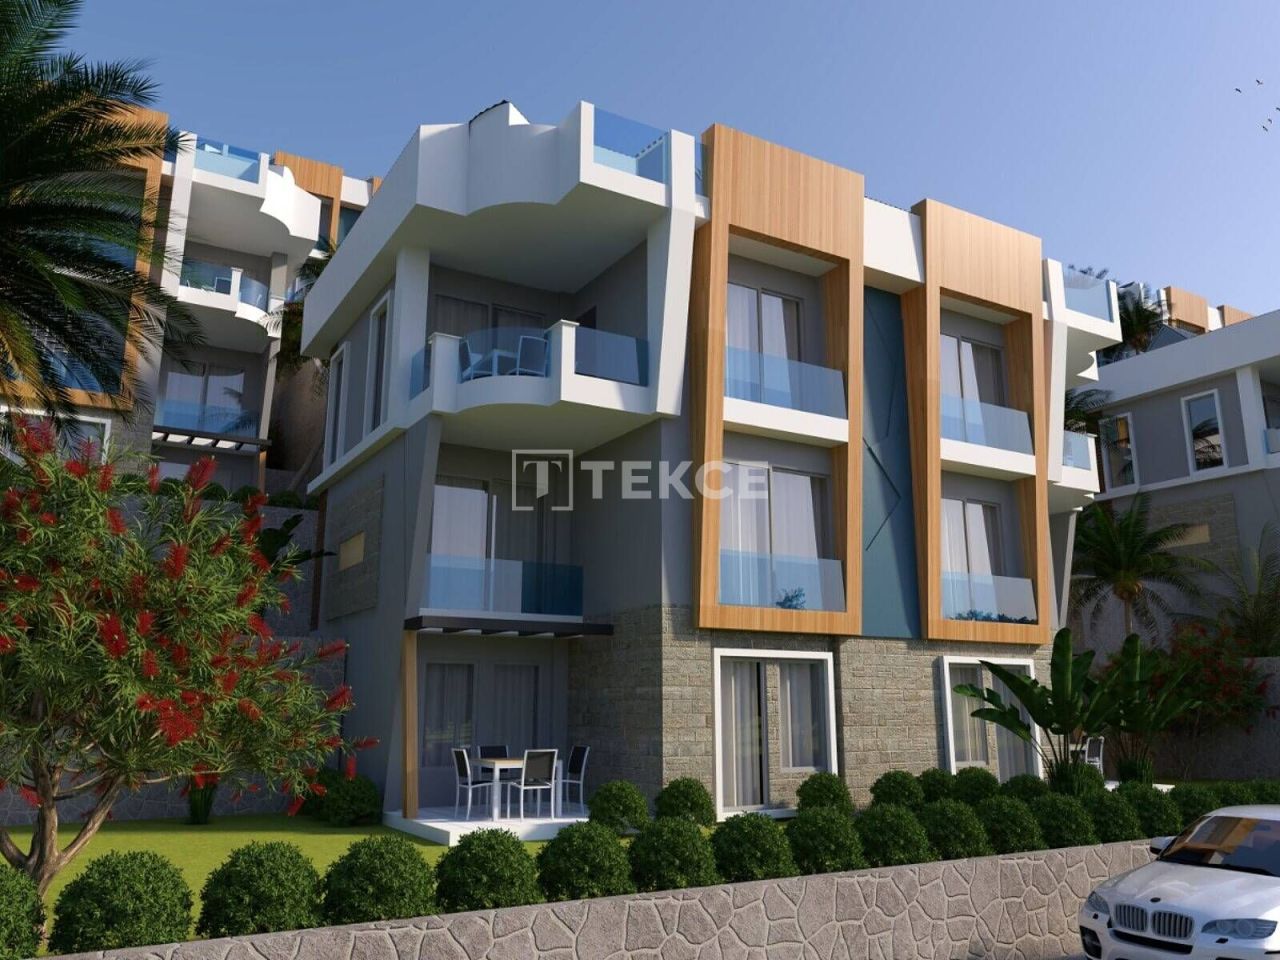 Apartment in Milas, Turkey, 110 sq.m - picture 1